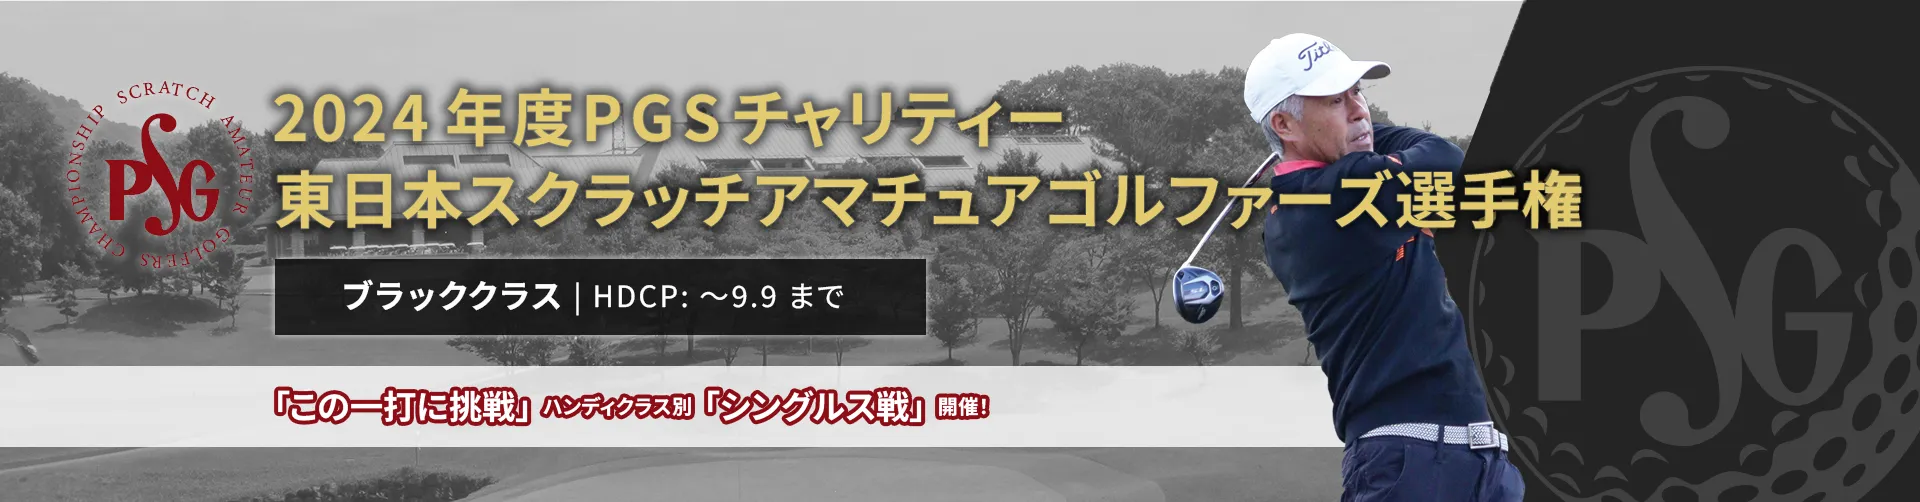 2024年度PGSチャリティー東日本スクラッチアマチュアゴルファーズ選手権_ブラッククラス|HDCP:~9.9まで